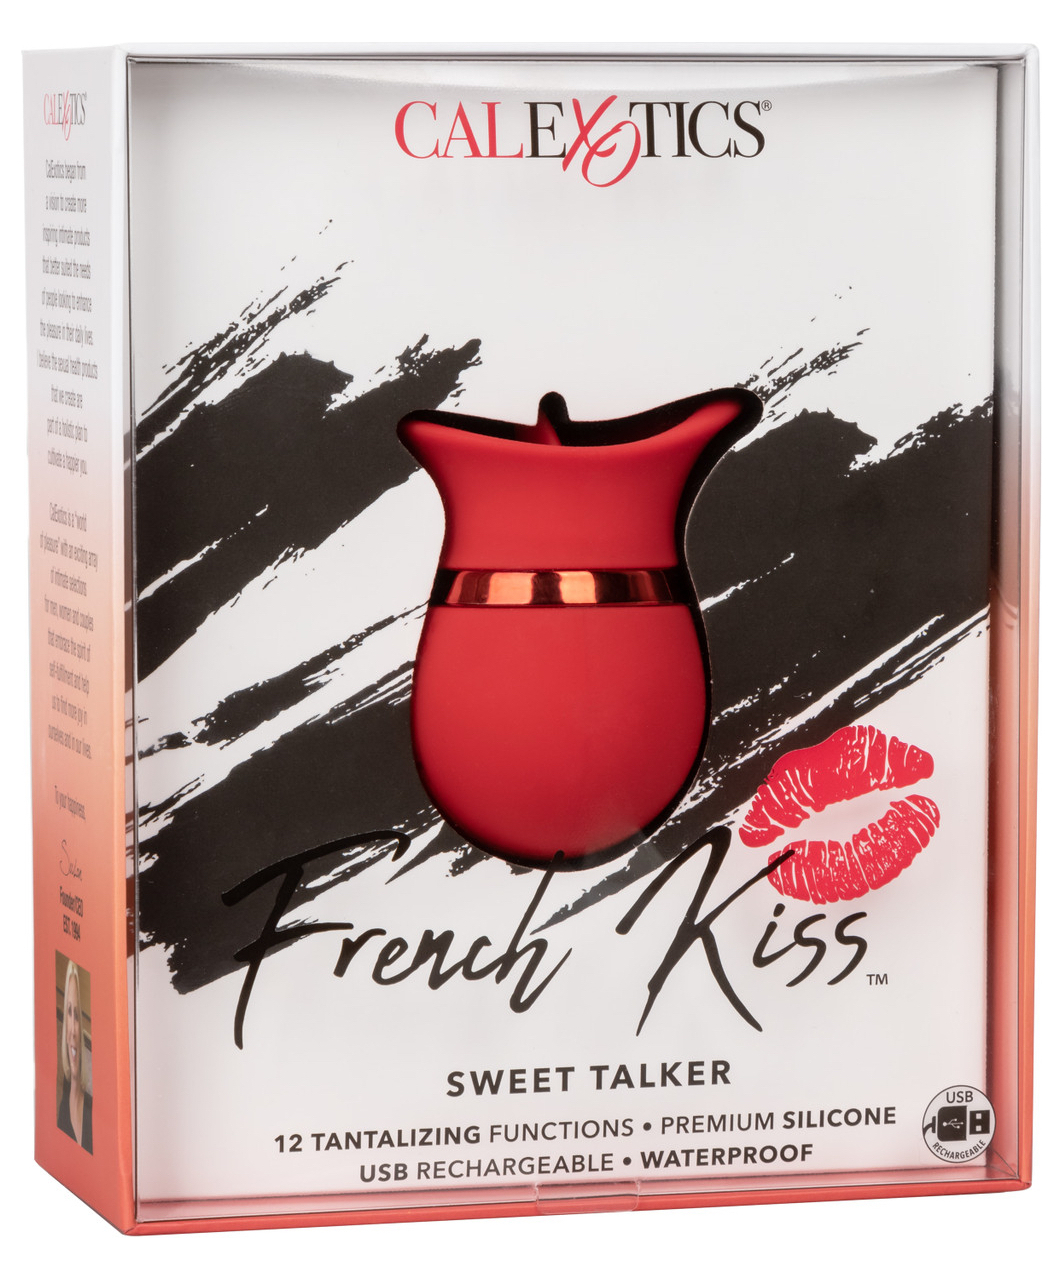 CalExotics French Kiss Sweet Talker stimulators